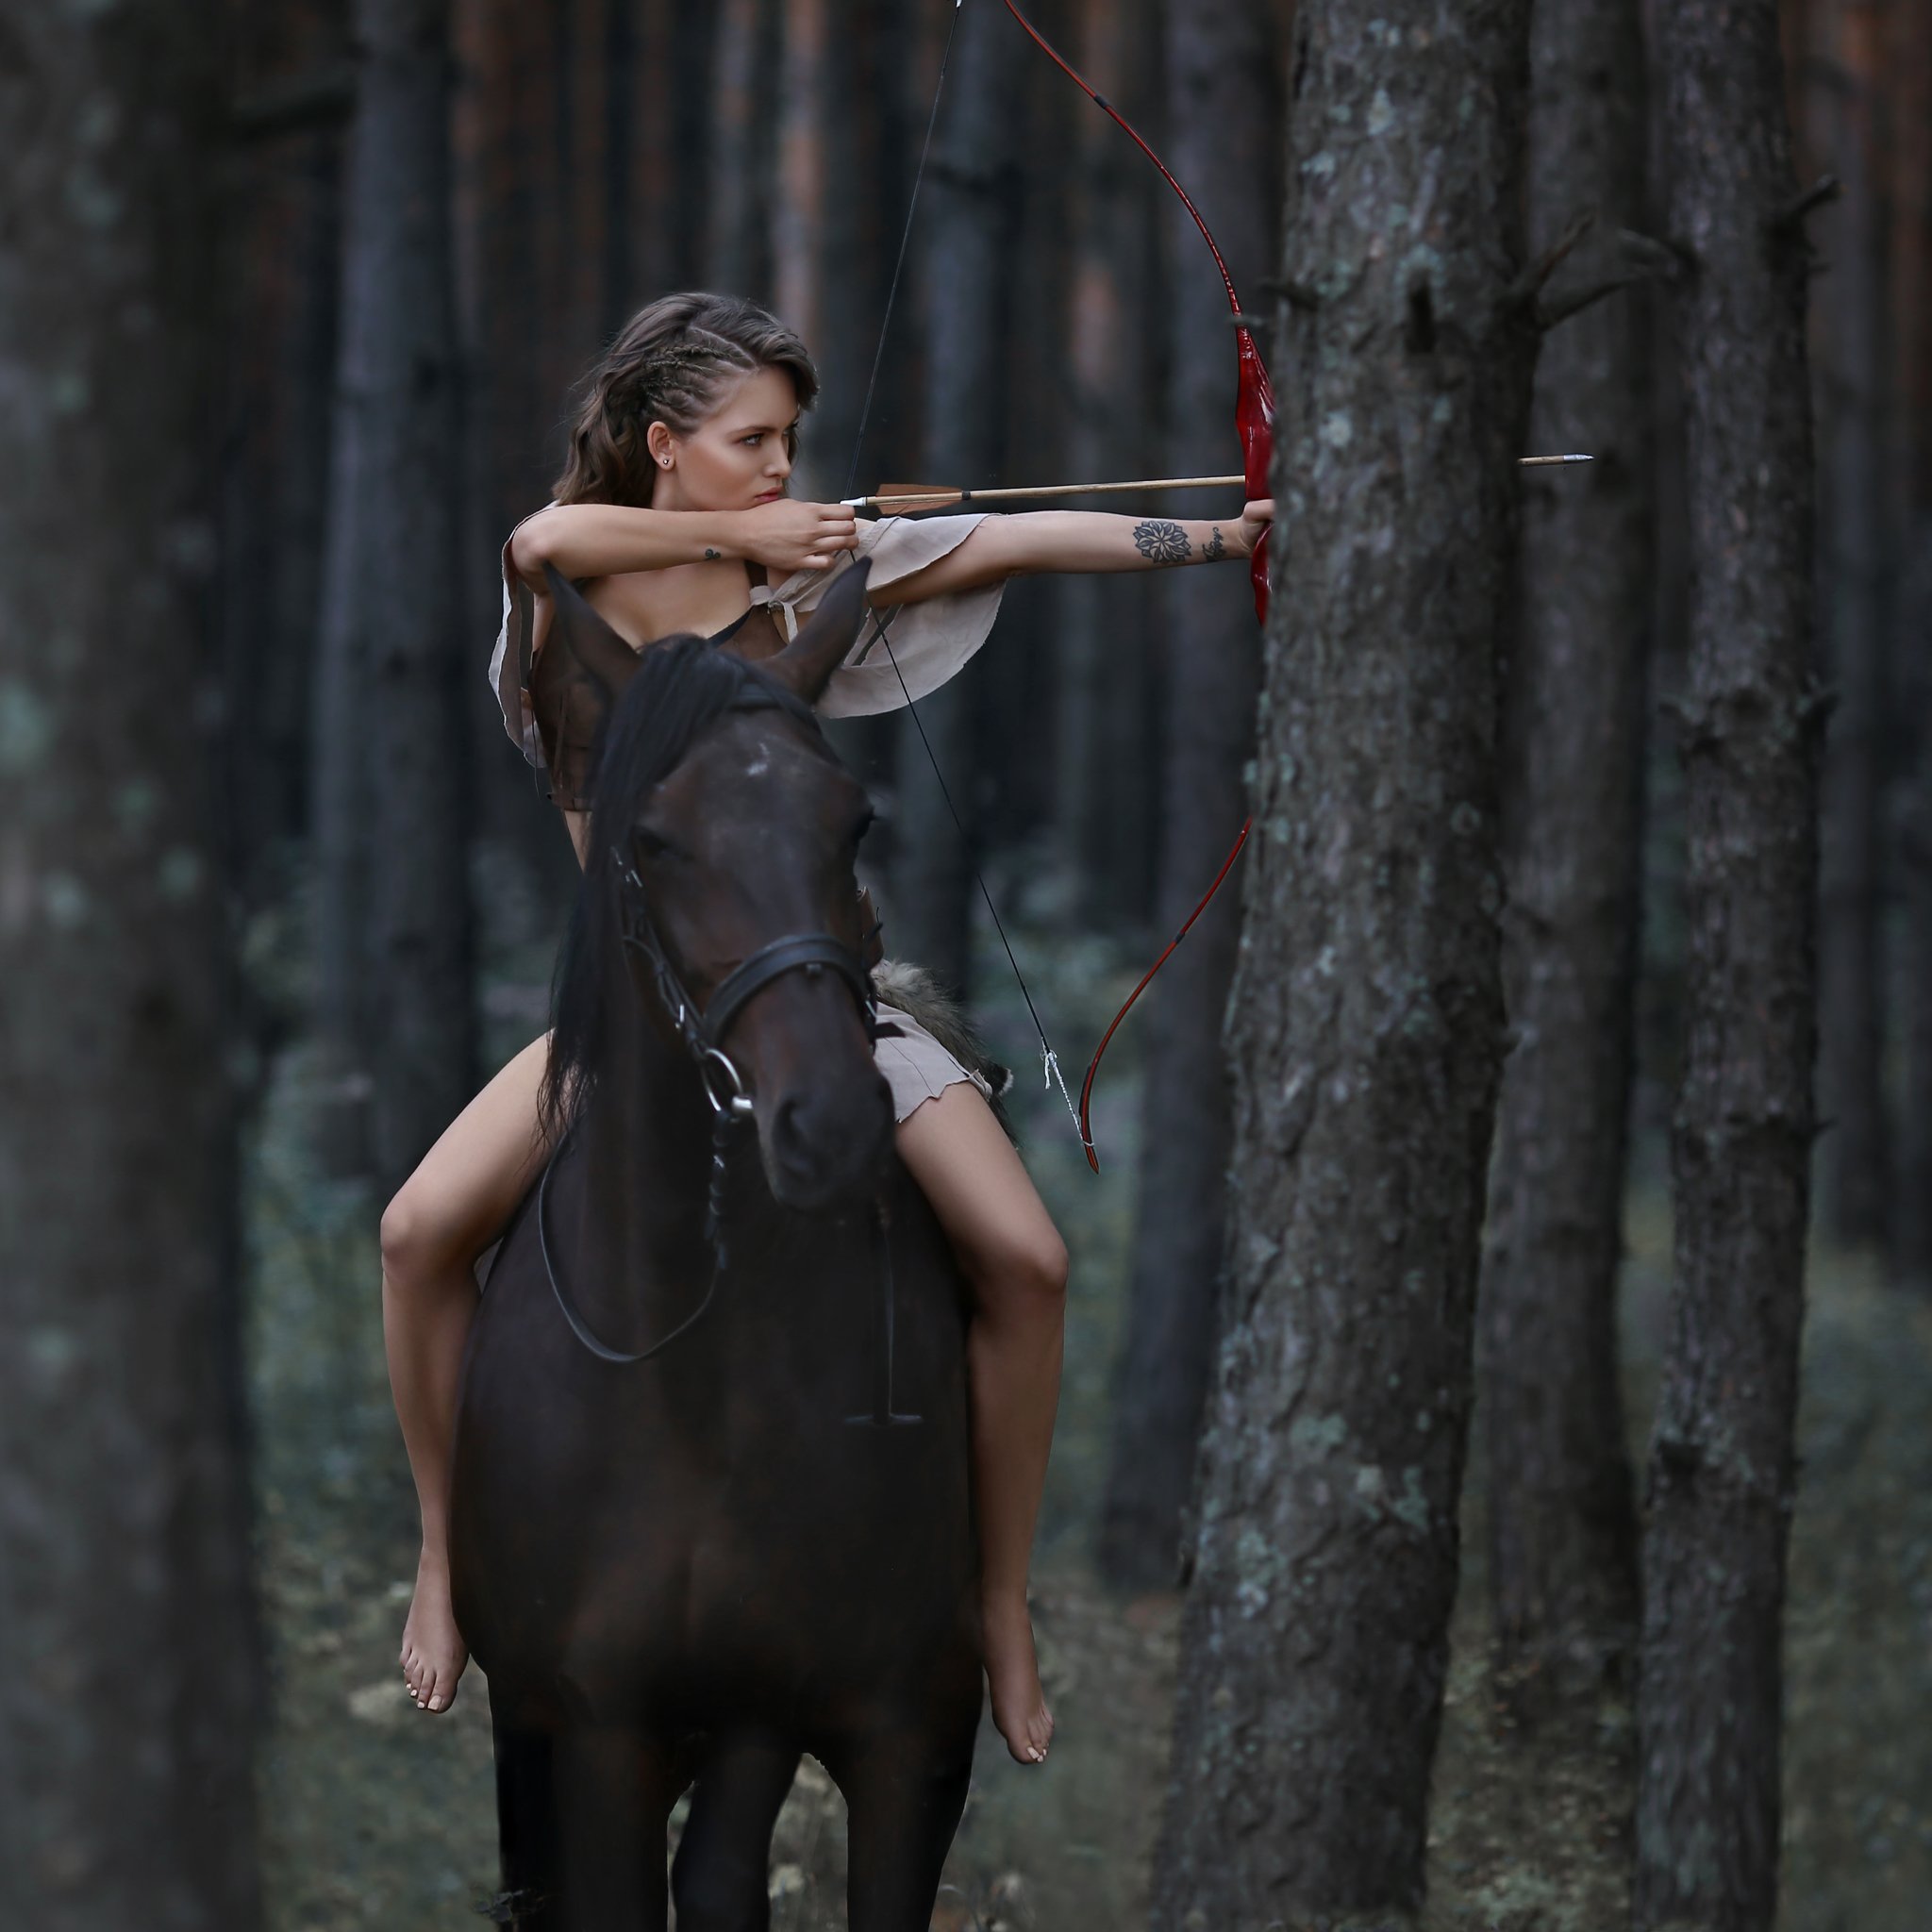 амазонка, лук, стрелы, девушка с луком, стрелять из лука, стрельба, лошадь, девушка на лошади, Ирина Голубятникова